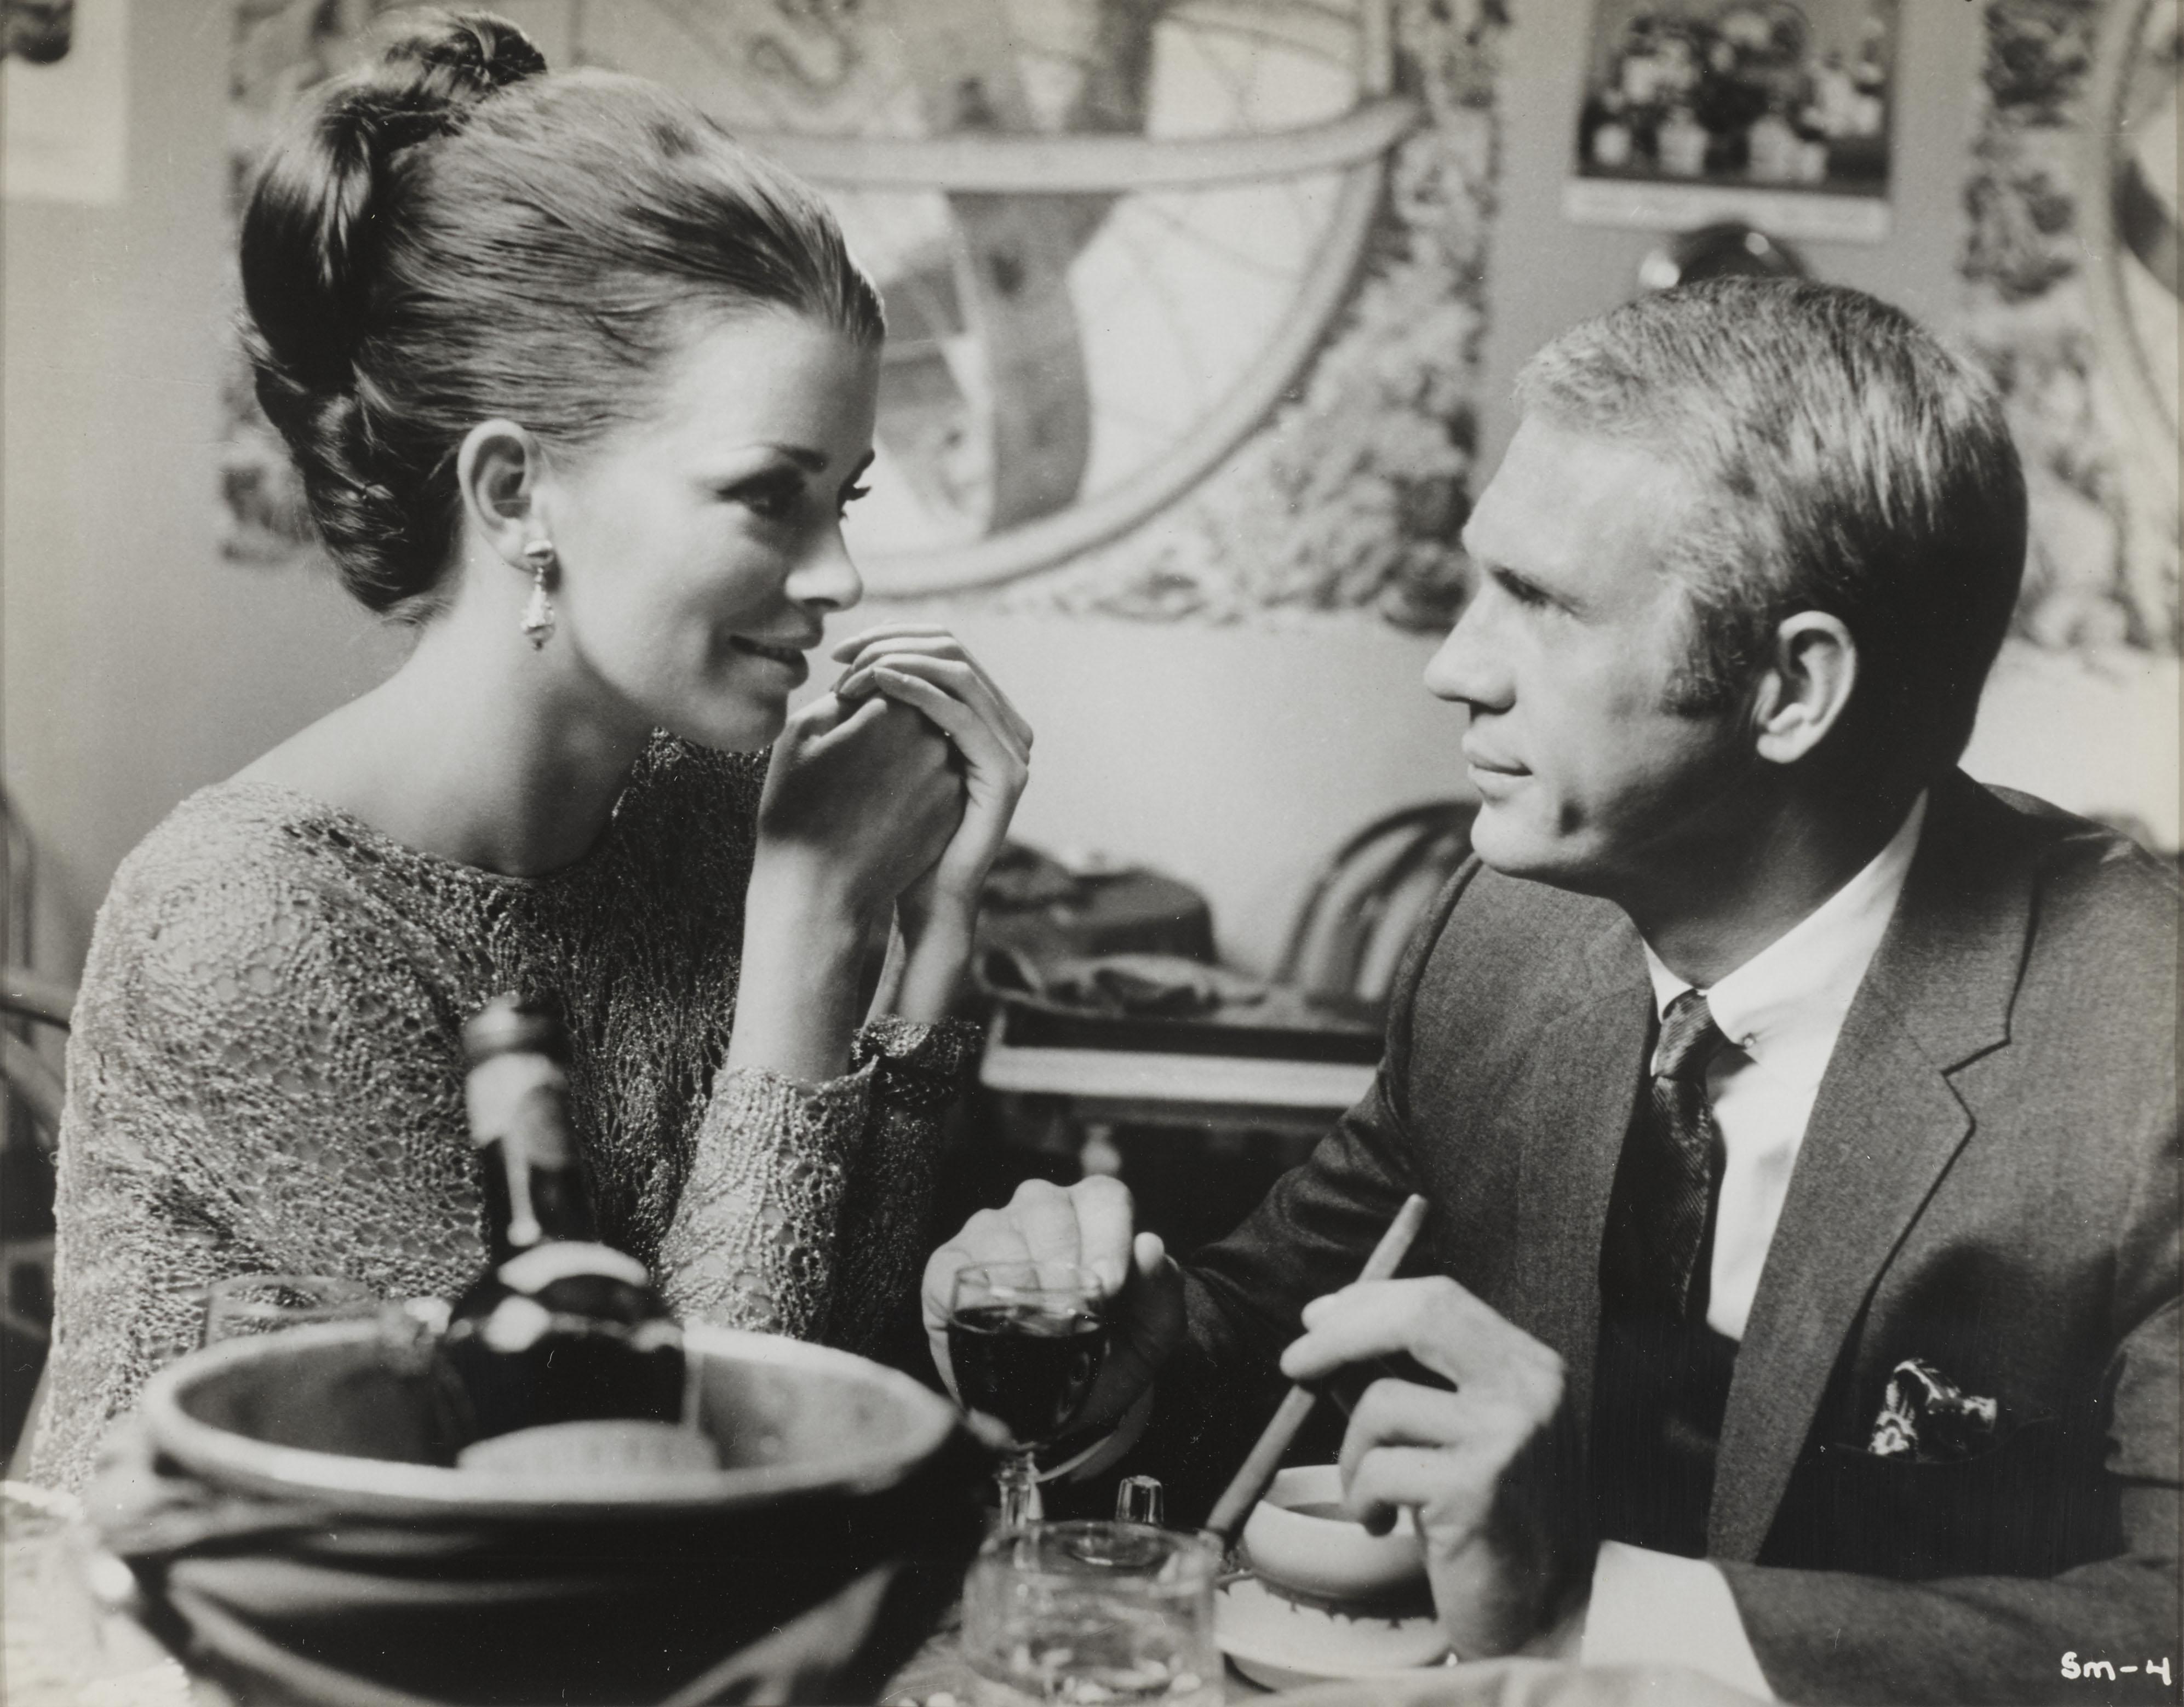 Original US-Studioproduktionsfoto für The Thomas Crown Affair 1968.
In diesem Film spielten Steve McQueen und Faye Dunaway die Hauptrollen,  und wurde von Norman Jewison inszeniert.
Dieses Stück ist Erhaltung gerahmt mit UV-Plexiglas und würde